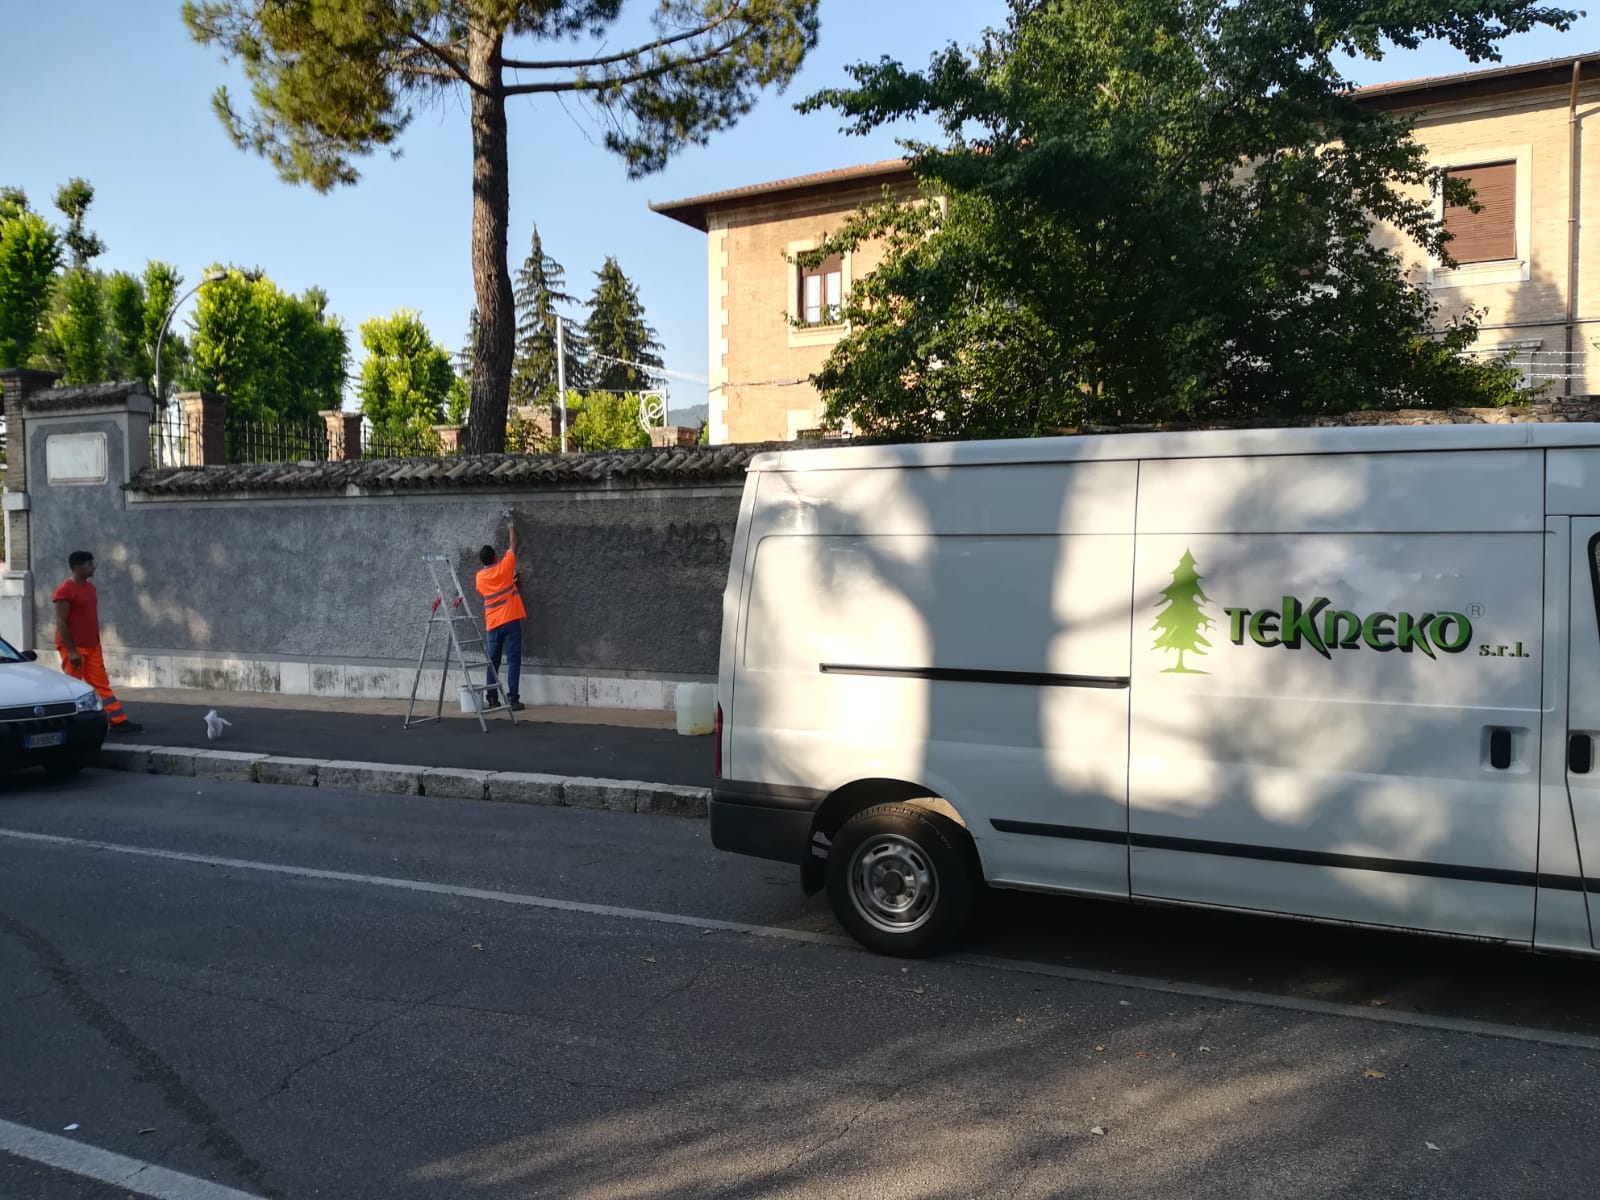 Operatori Tekneko in azione a Villa Torlonia, ripulite da scritte e murales le mura perimetrali